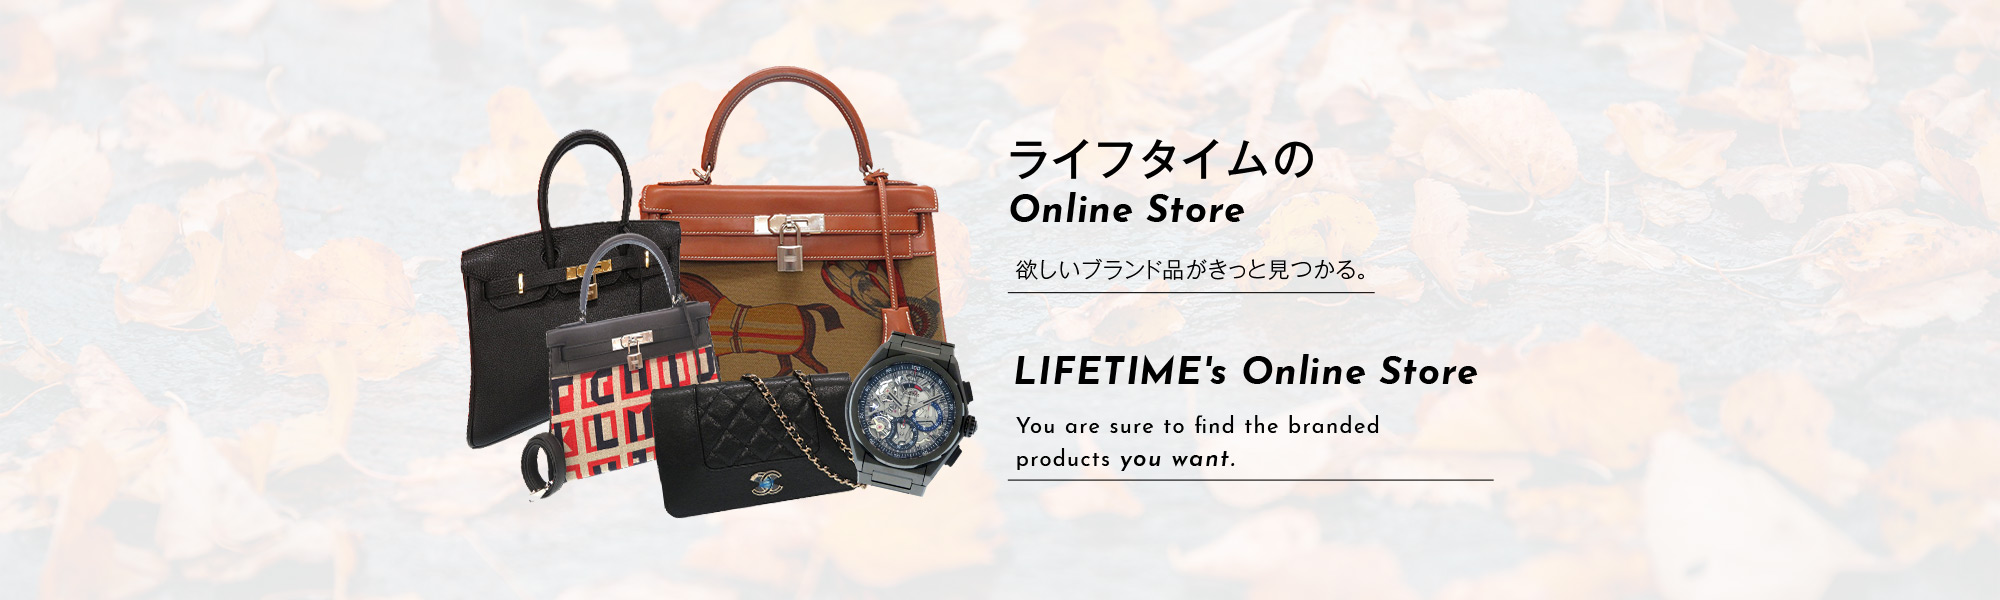 ライフタイムのOnline Store, LIFETIME's Online Store